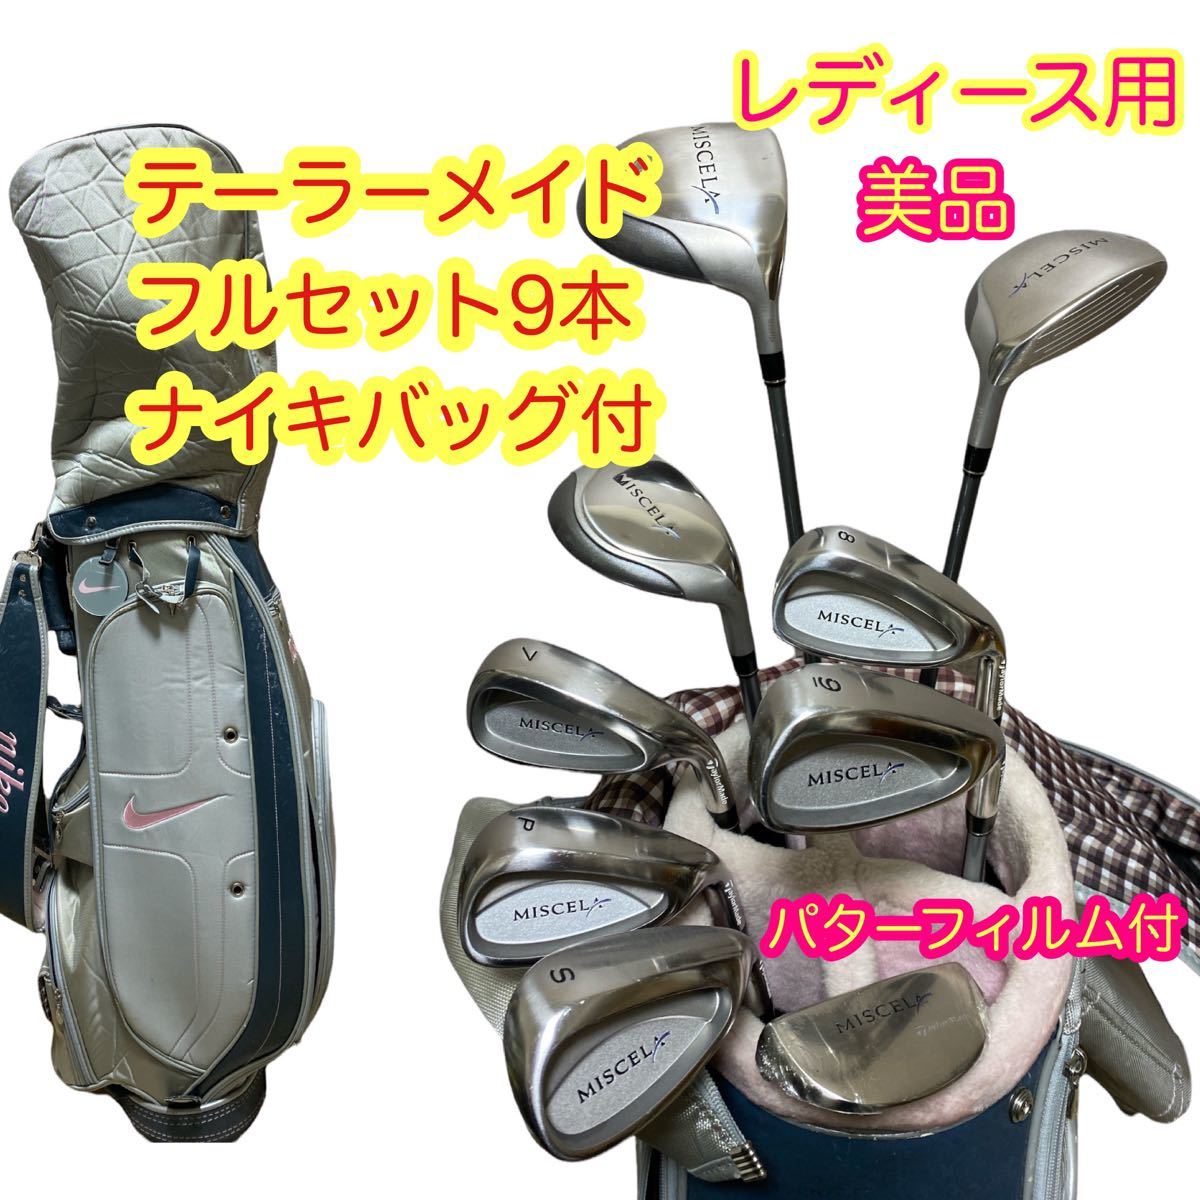 36500円 大人気定番商品 新品未使用 完売品 レディースゴルフクラブ セット ナイキ NIKE 優しい